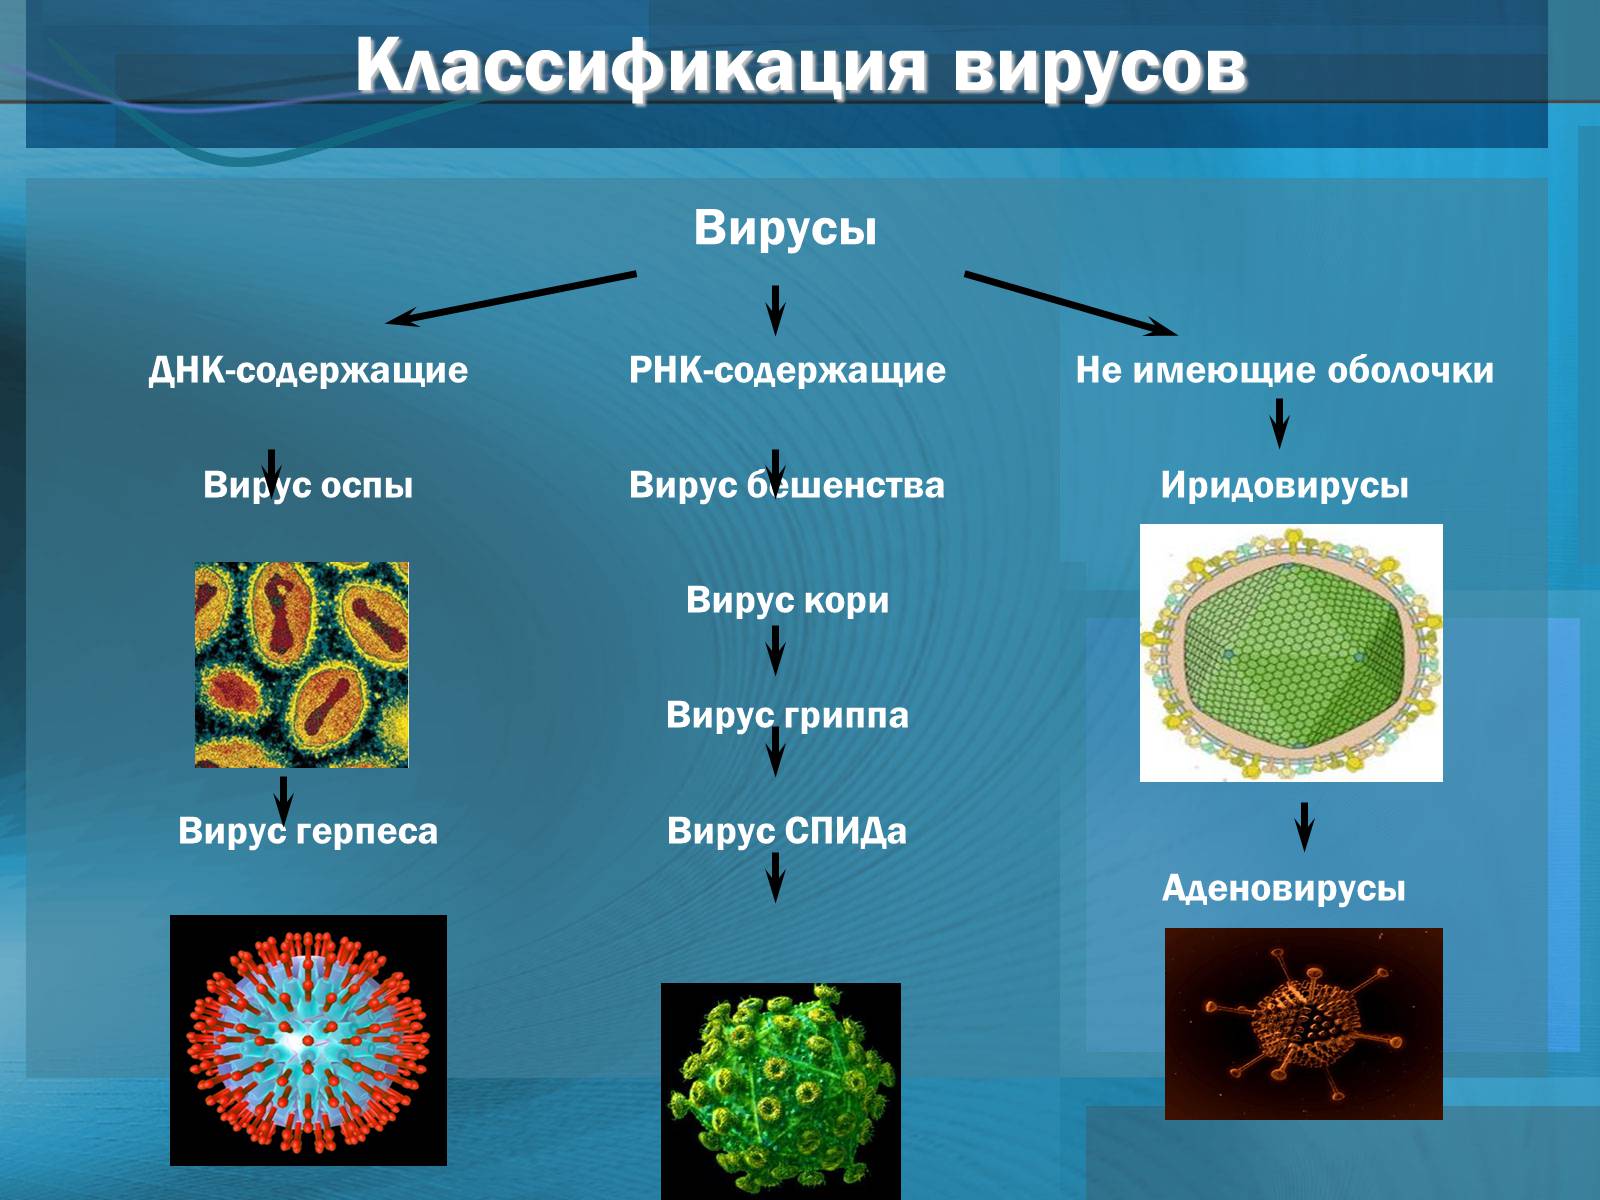 Вирусы относятся к форме жизни. Типы вирусов биология. Представители царства вирусов 5 класс биология. Царство вирусов 5 класс биология. Типы строения вирусов.